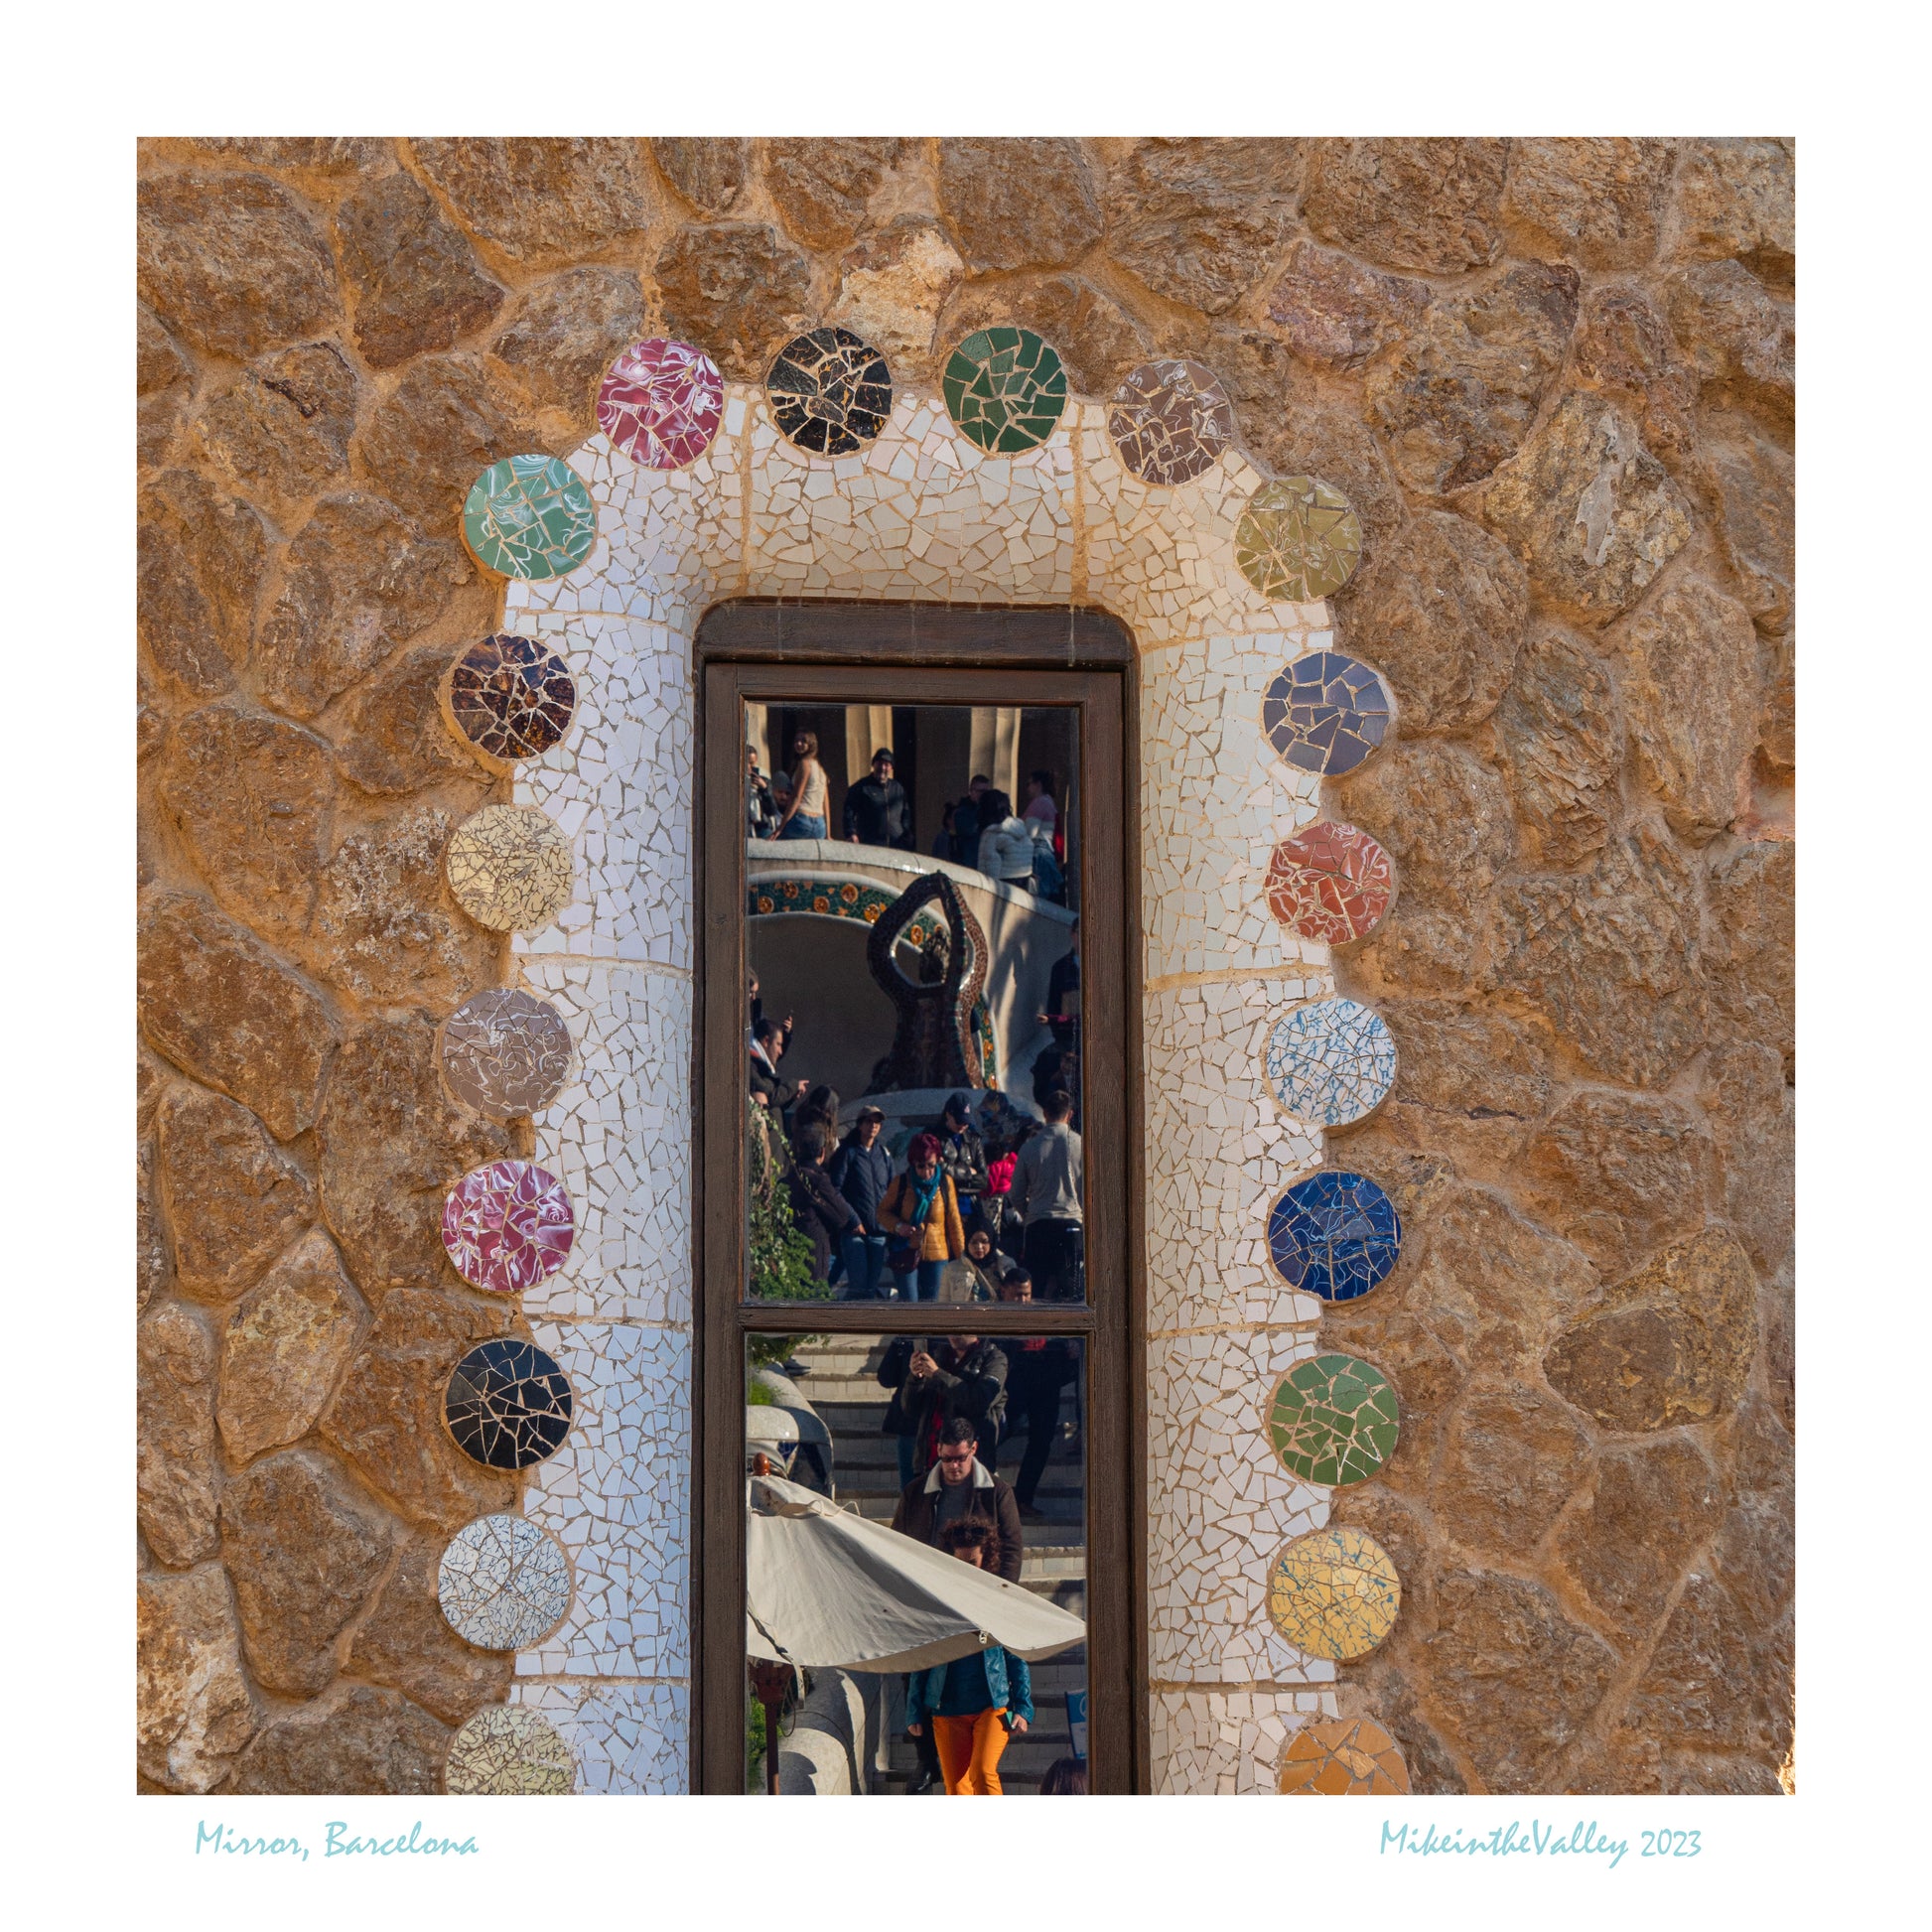 Hausfassade mit Fenster in Barcelona. Fenster ist mit bunten Keramik-Teilen in Trencadis-Technik eingefasst. Im Fenster spiegeln sich Menschen, die eine Treppe hinuntergehen.